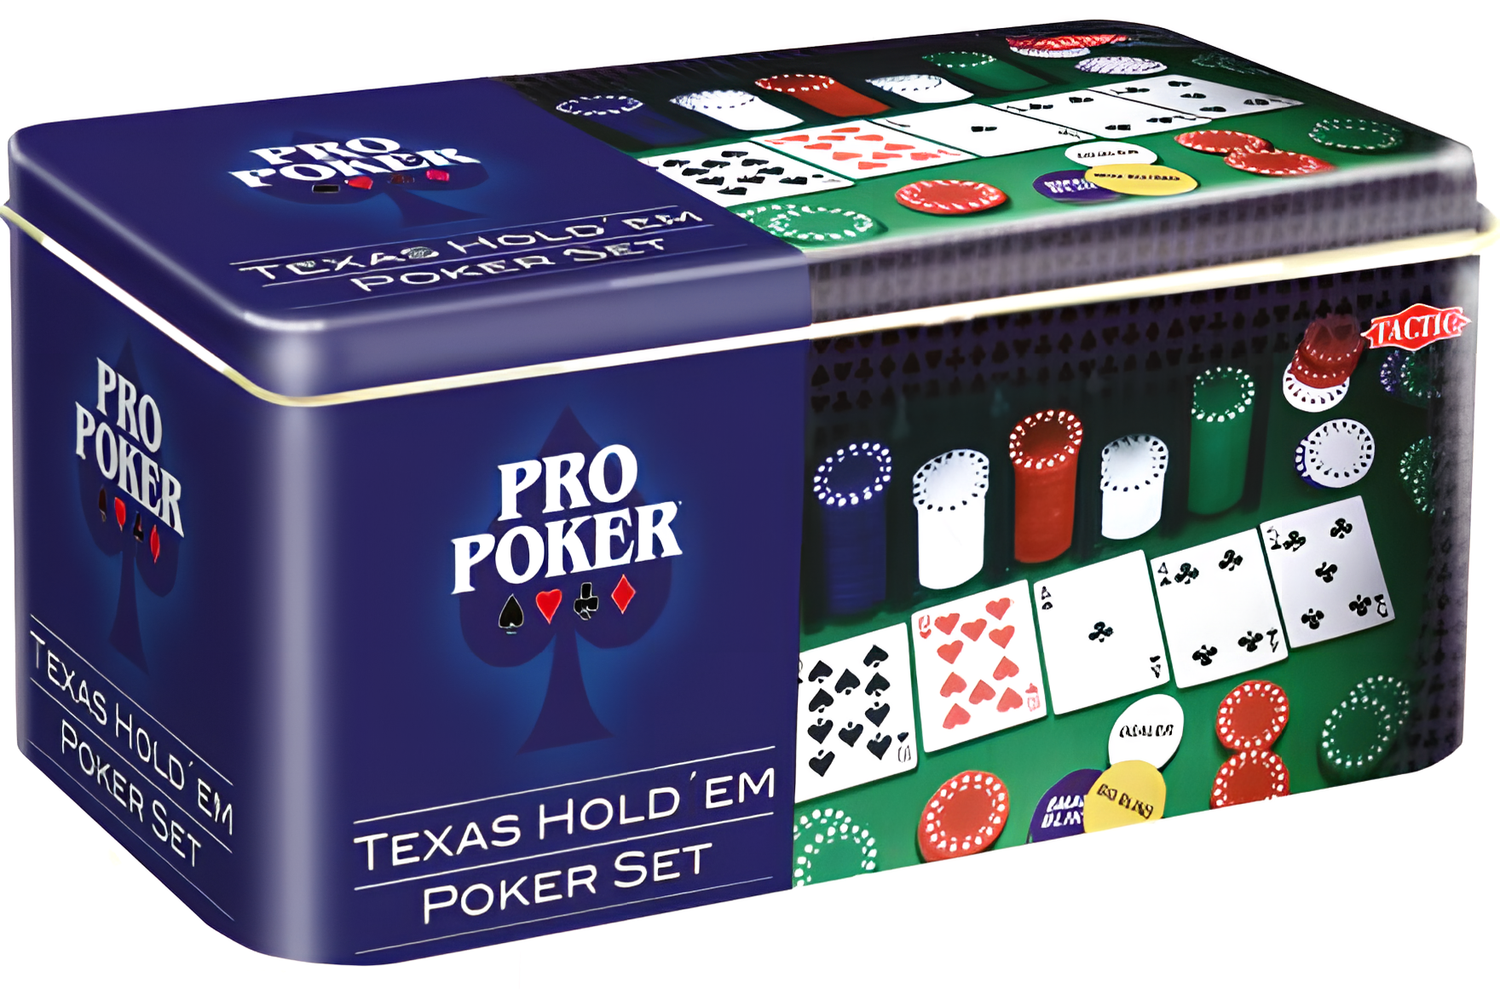 Pro Poker Texas Hold´em pokerisetti metallirasiassa